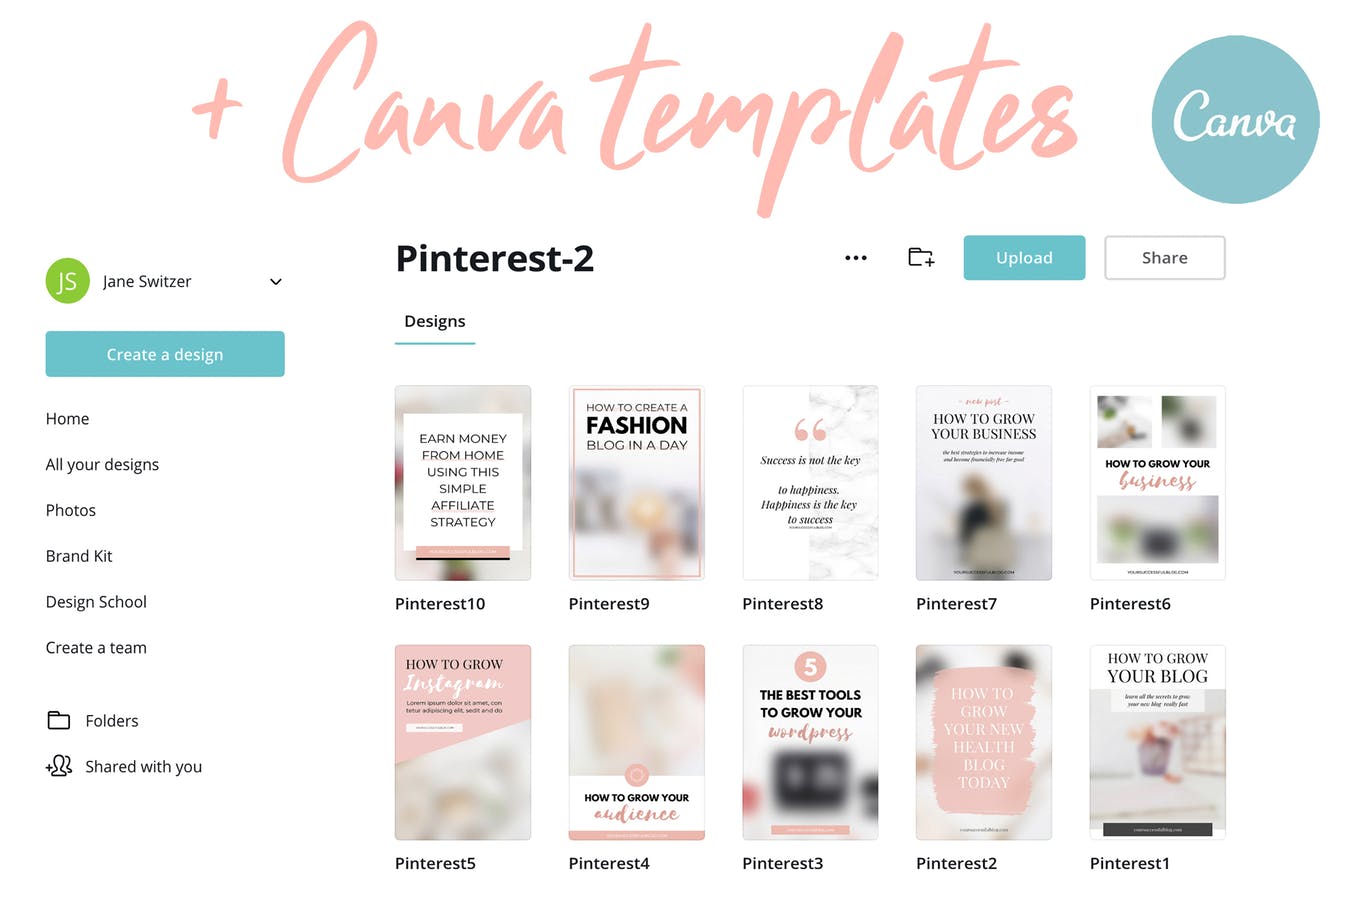 10款粉色主题Pinterest社交贴图广告设计模板素材库精选v2 Canva Pinterest Templates V.2插图(2)